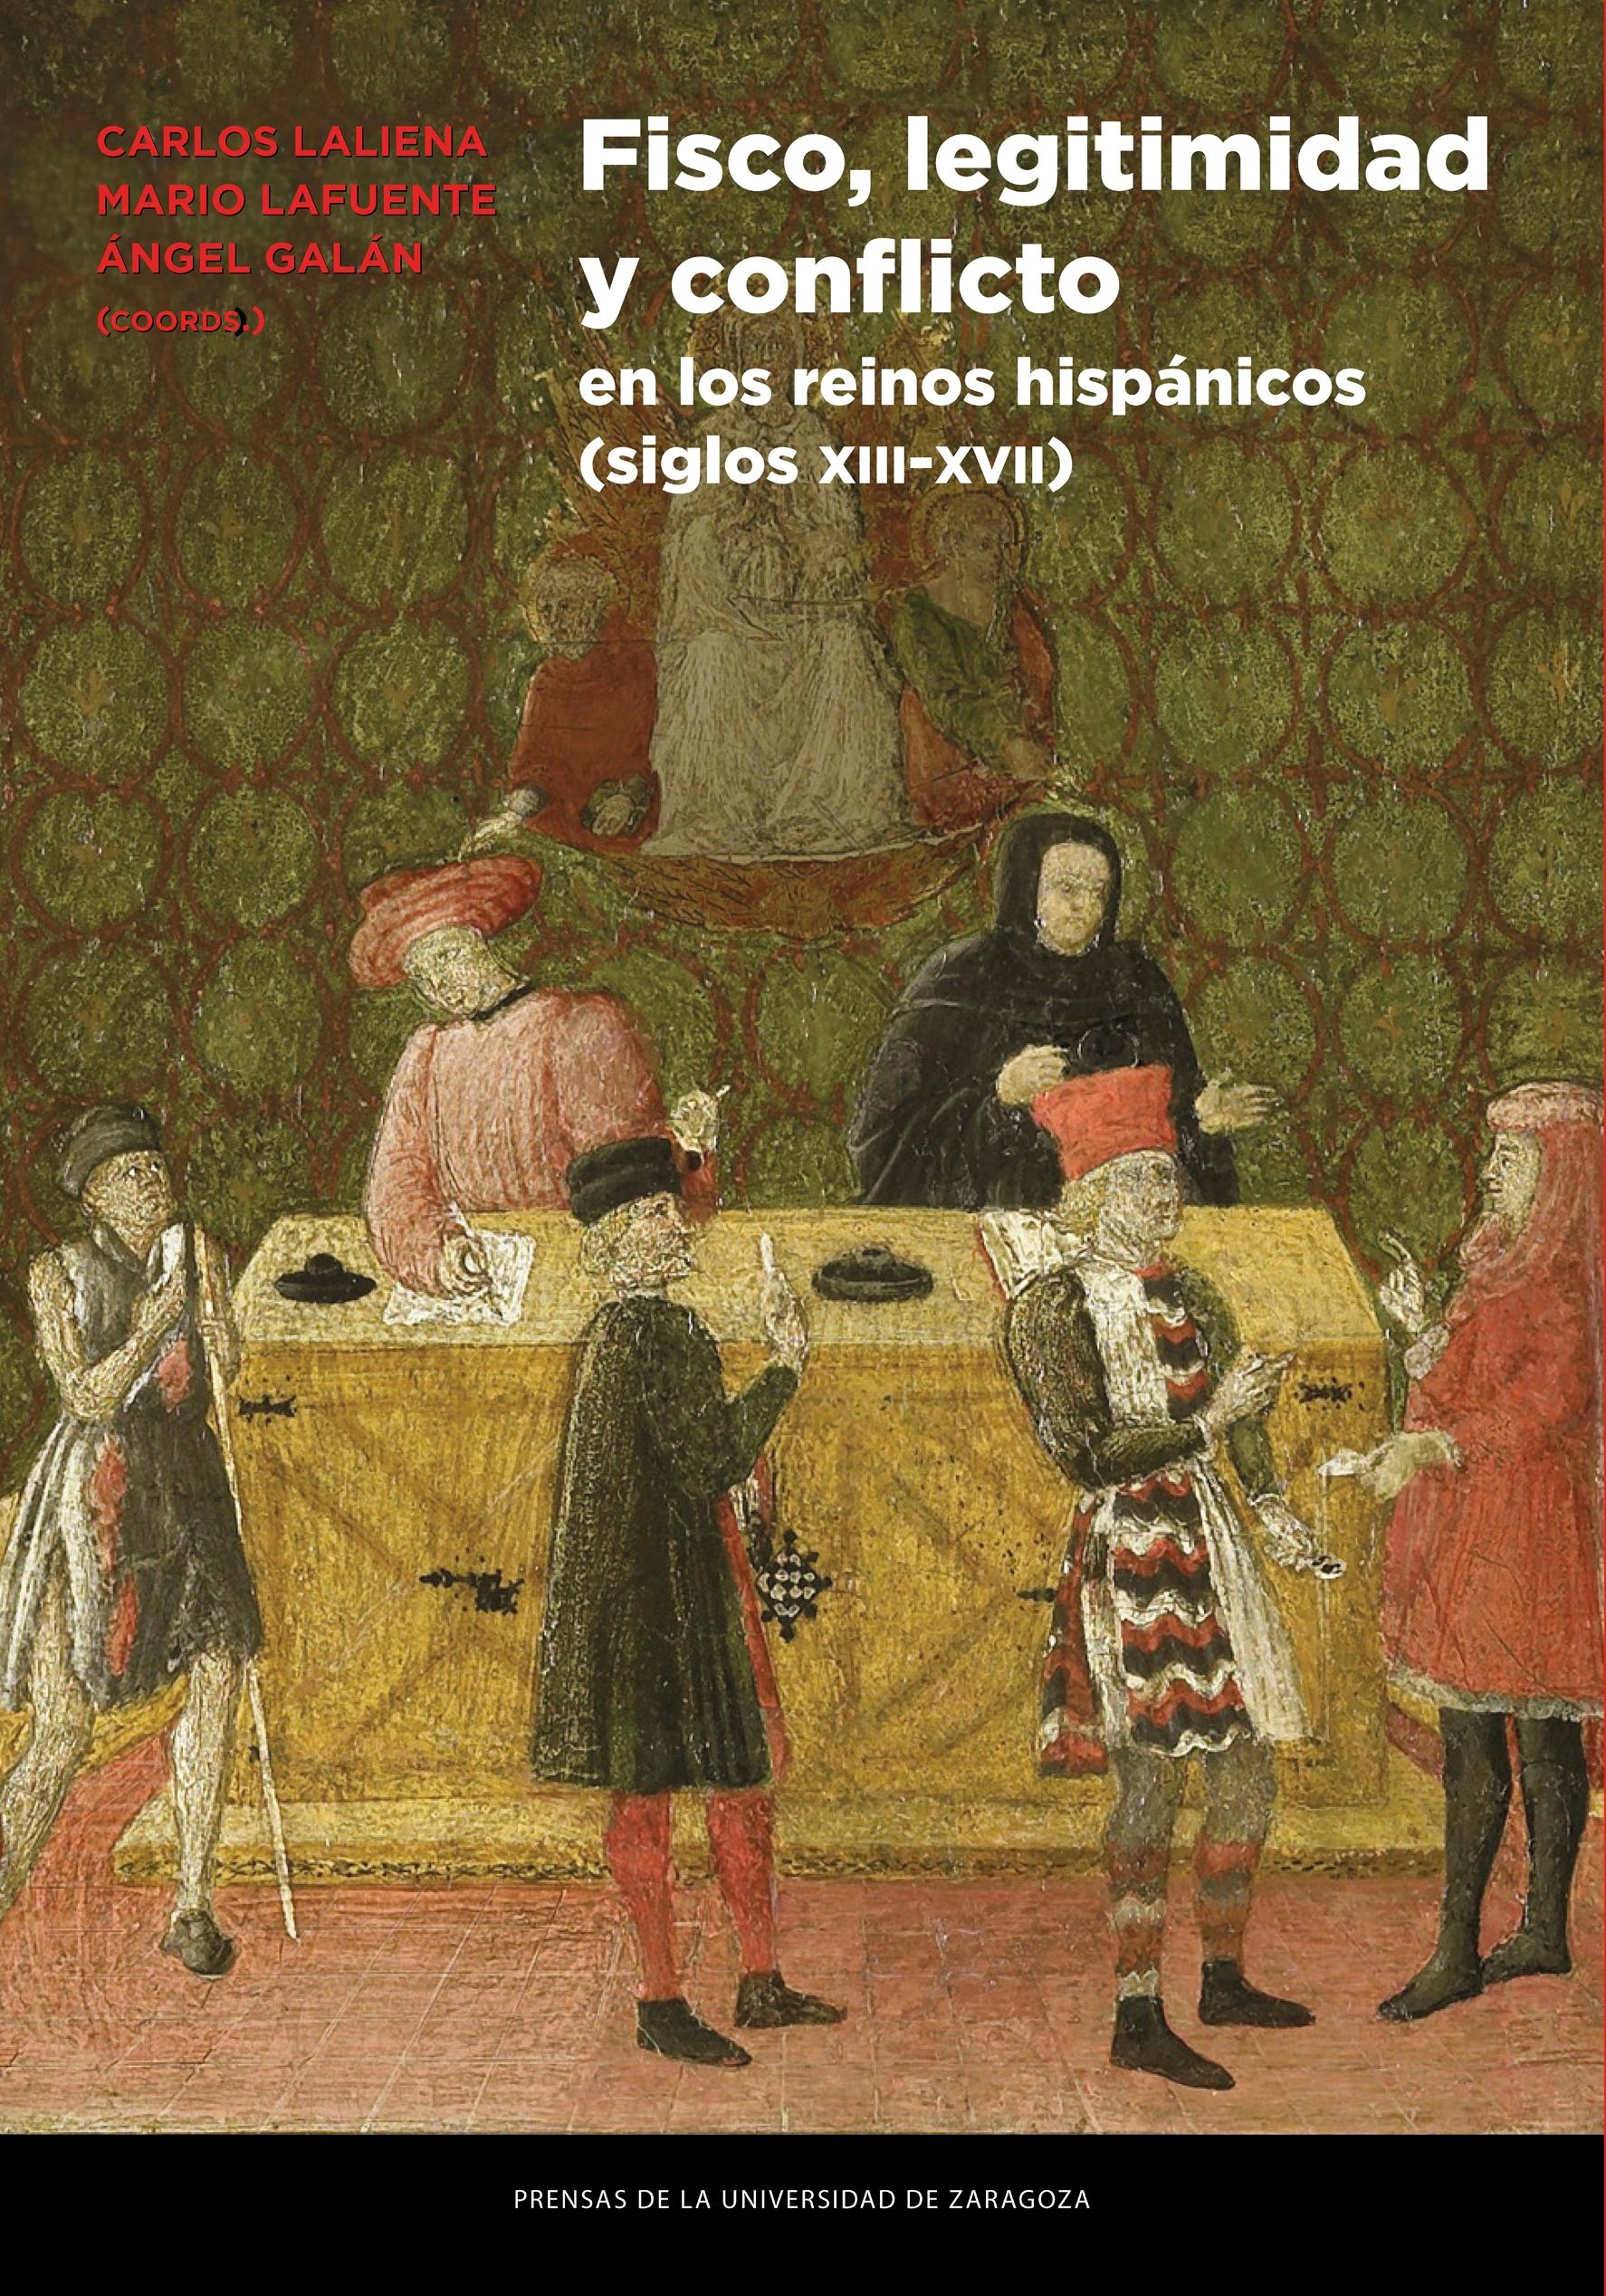 Fisco, legitimidad y conflicto en los reinos hispánicos (siglos XIII-XVII)